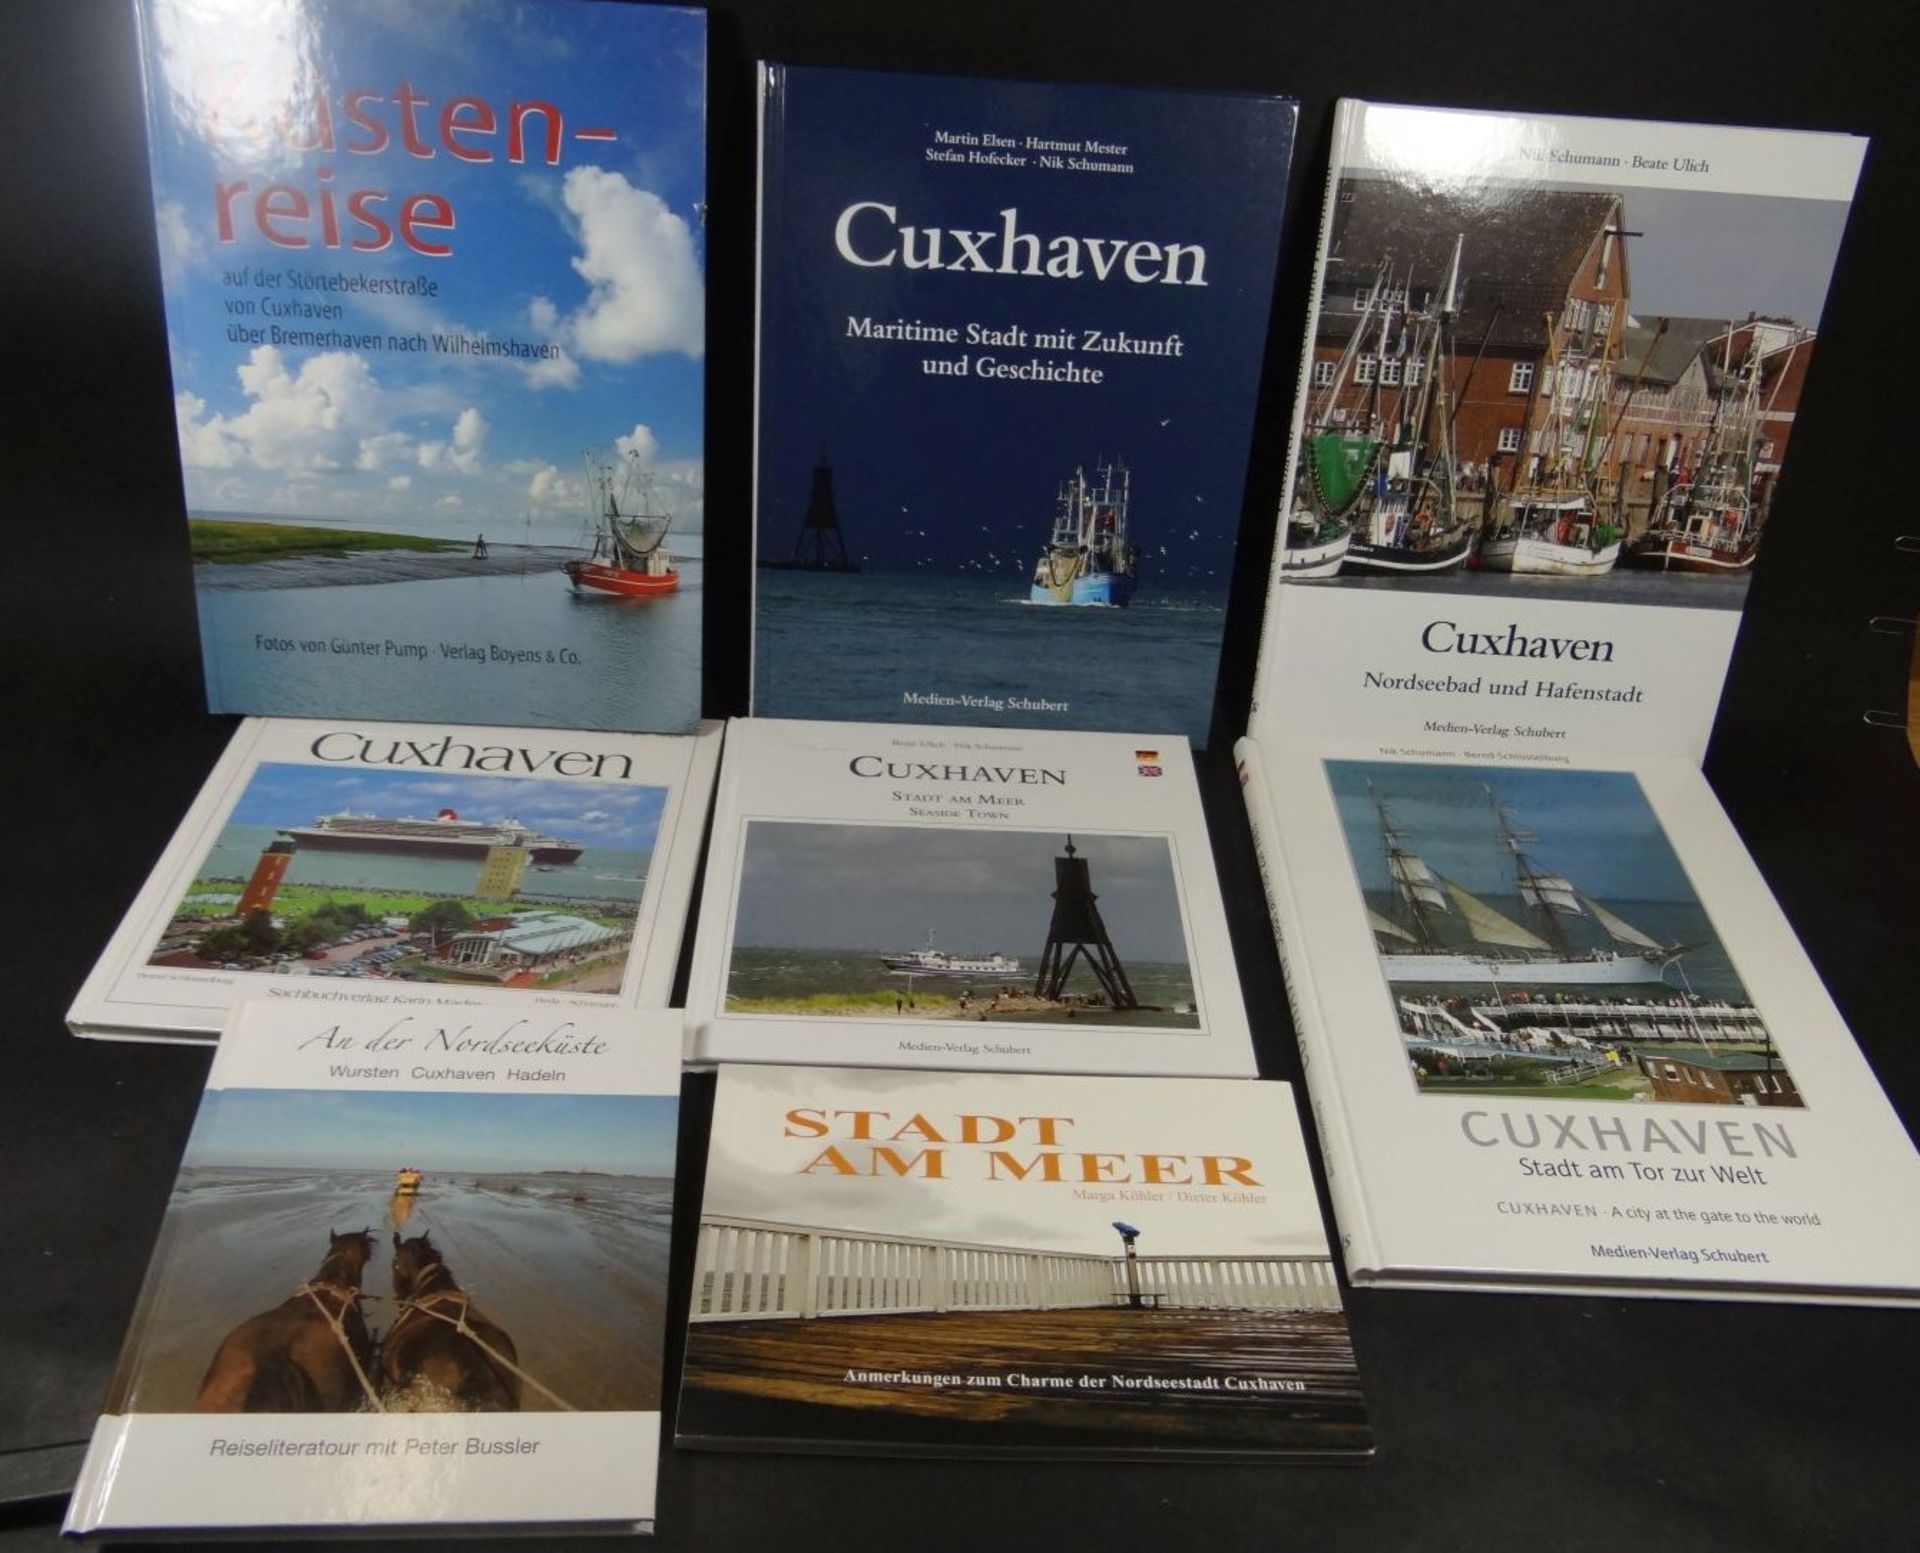 8x div. Bildbände über Cuxhaven und um- - -22.61 % buyer's premium on the hammer priceVAT margin